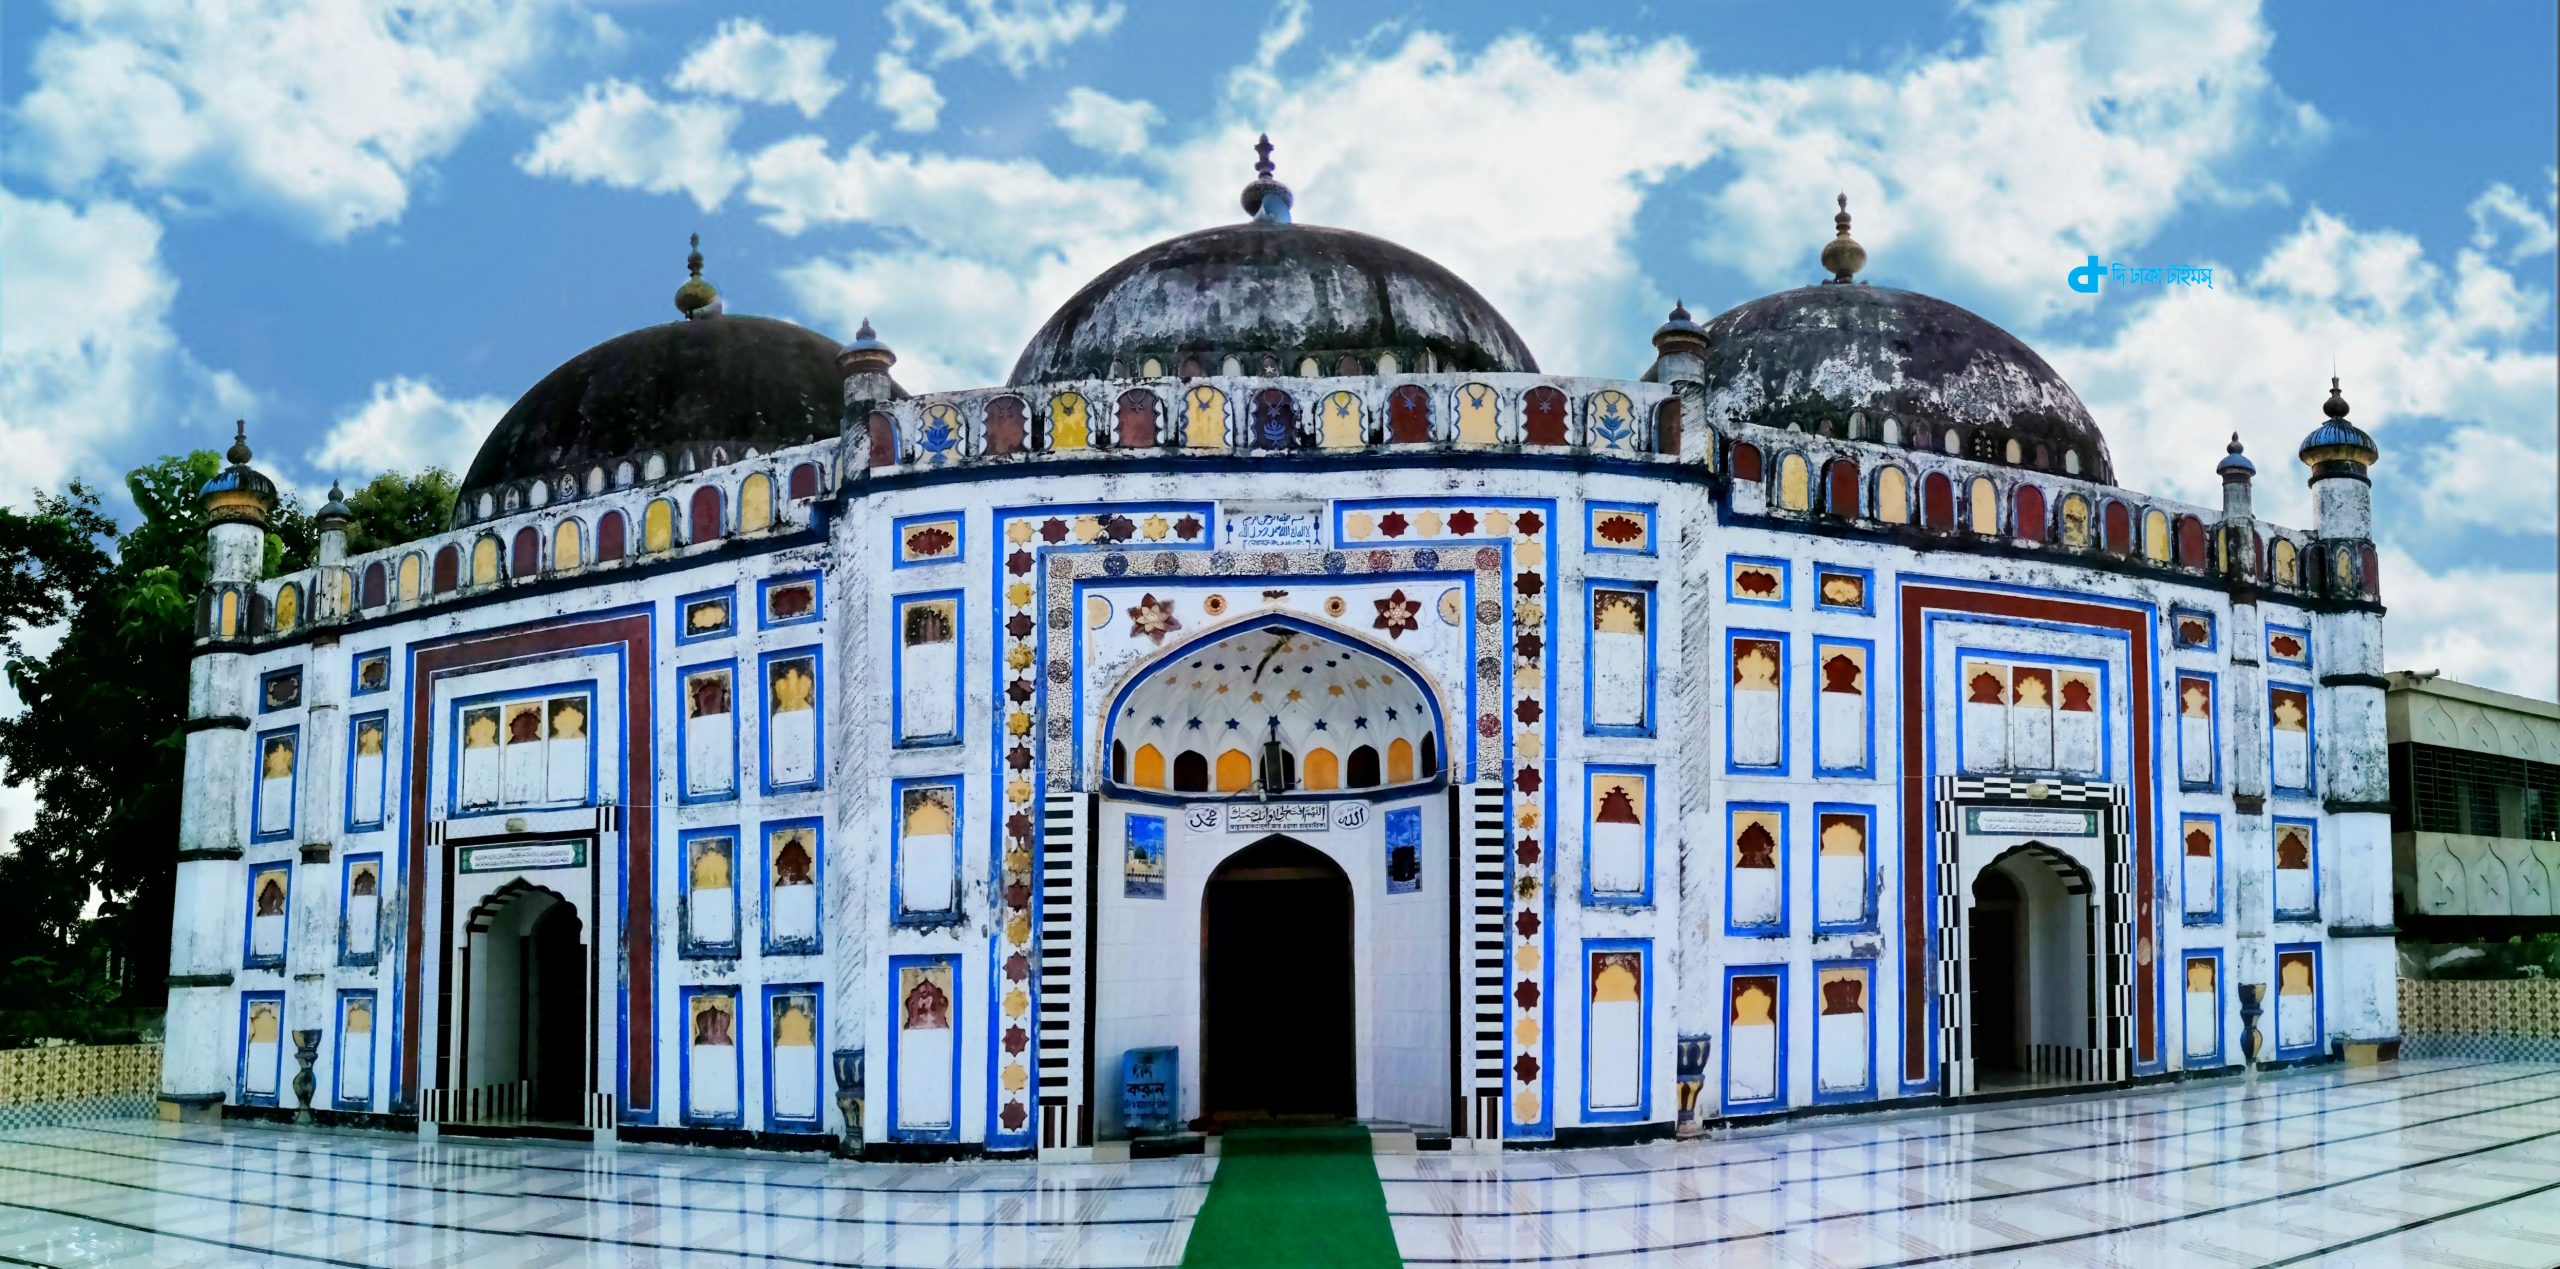 ব্রাহ্মণবাড়িয়ার ঐতিহাসিক আরিফিল মসজিদ 1